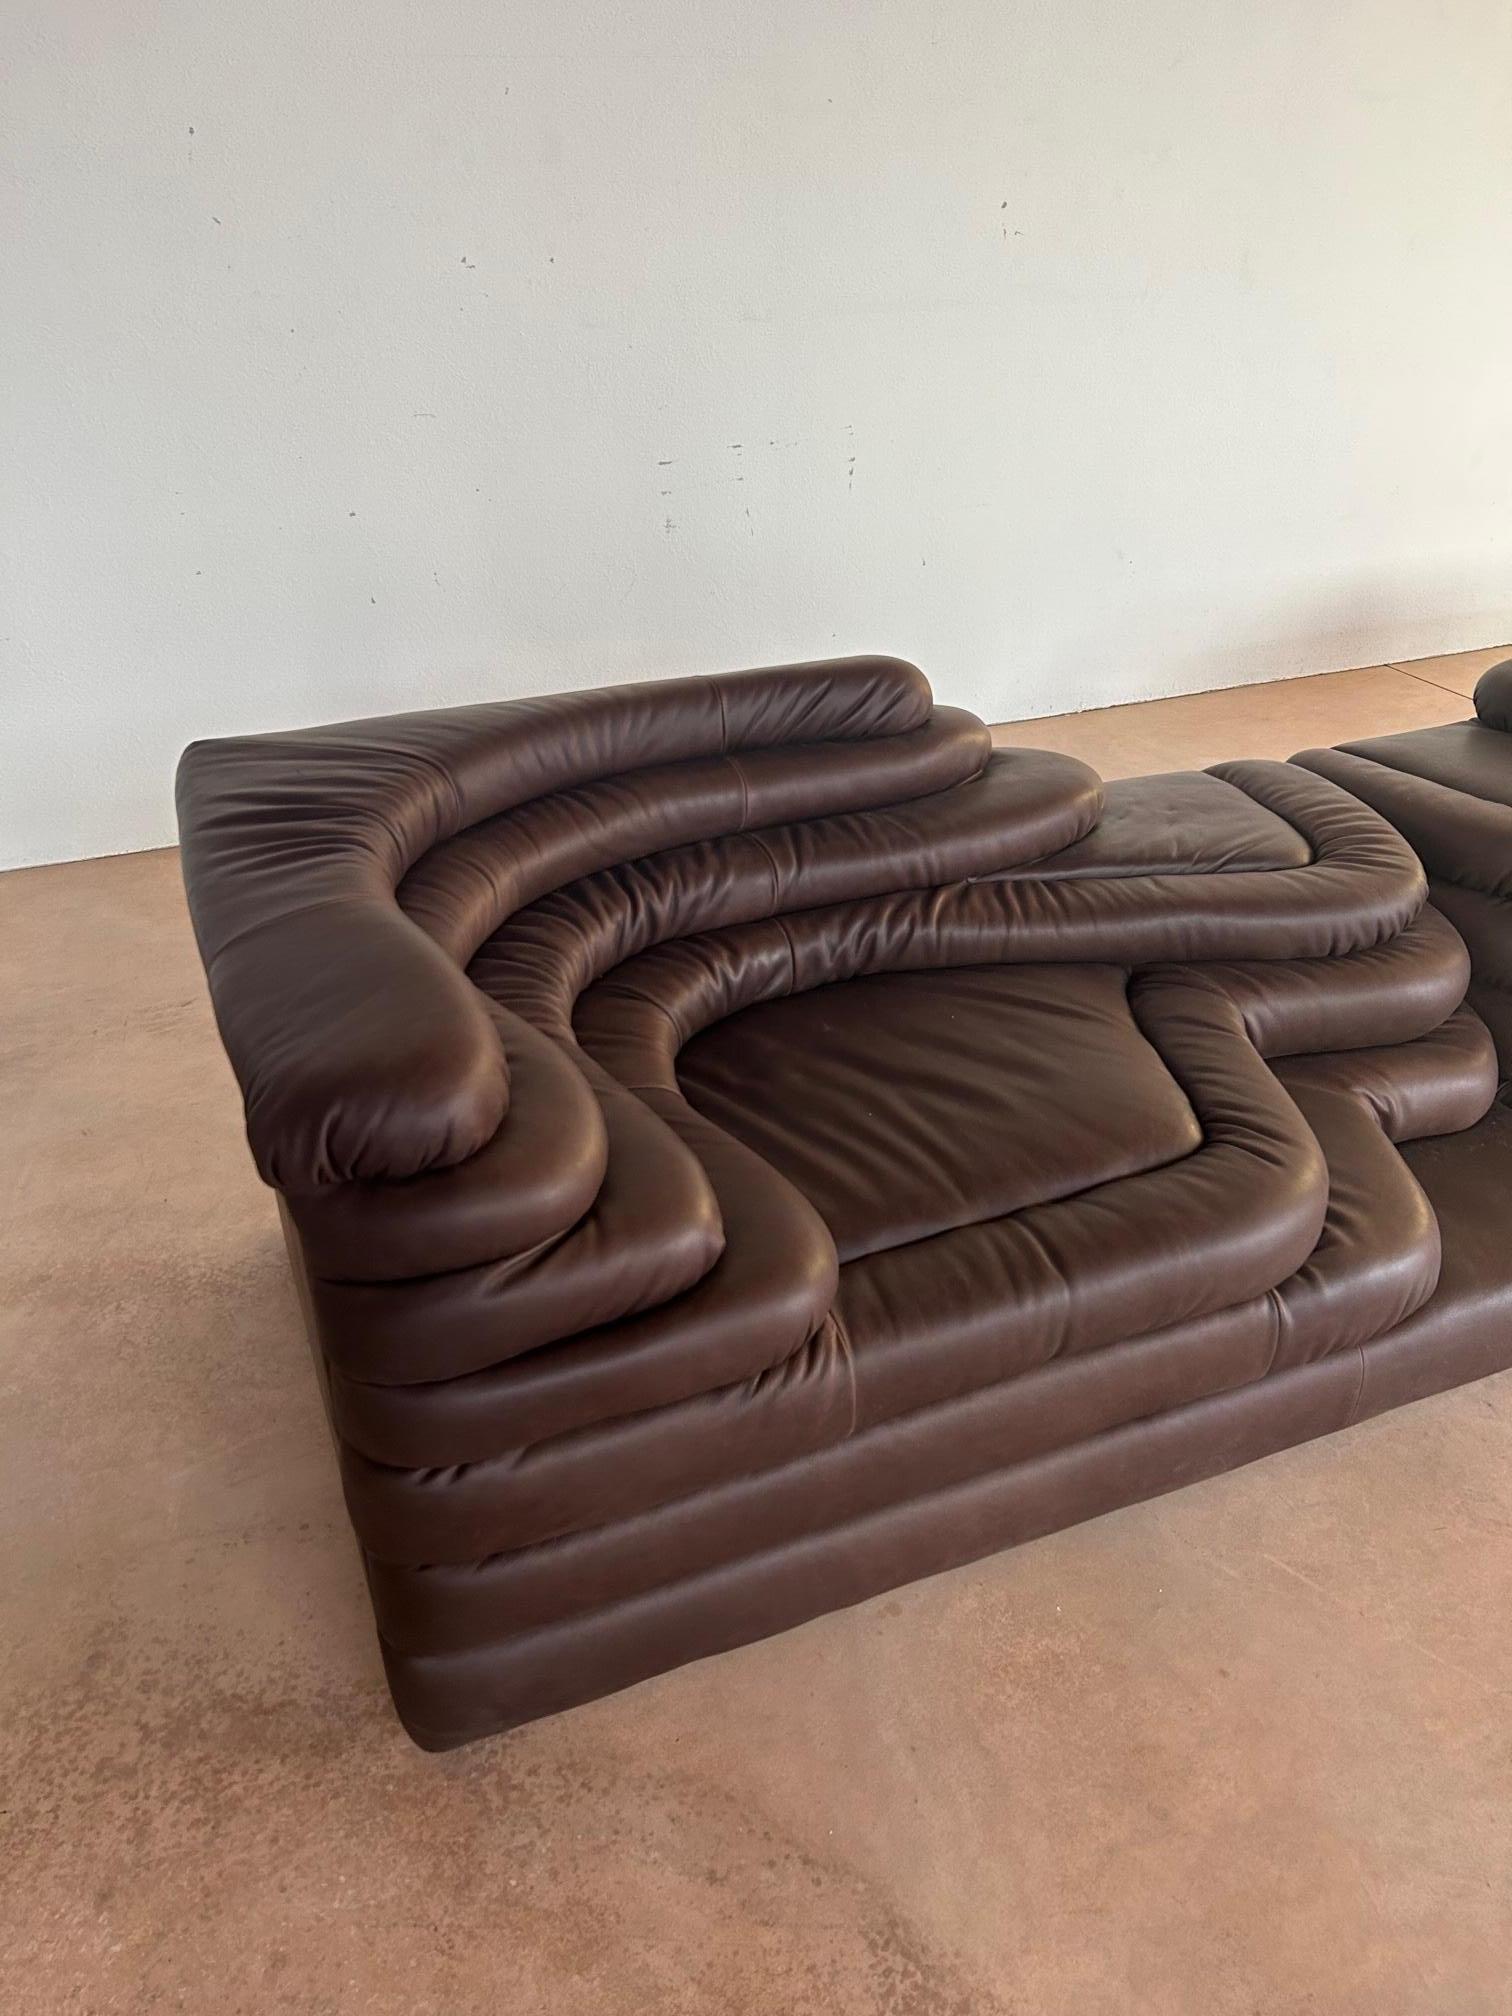 Ein Paar DS-125 Terrazza Sofa in dunkelbraunem Leder, entworfen von Ubald Klug für De Sede in den siebziger Jahren. Die von der Natur inspirierten Formen dieses Sofas in Kombination mit der hohen Qualität der Konstruktion machen es zu einem echten